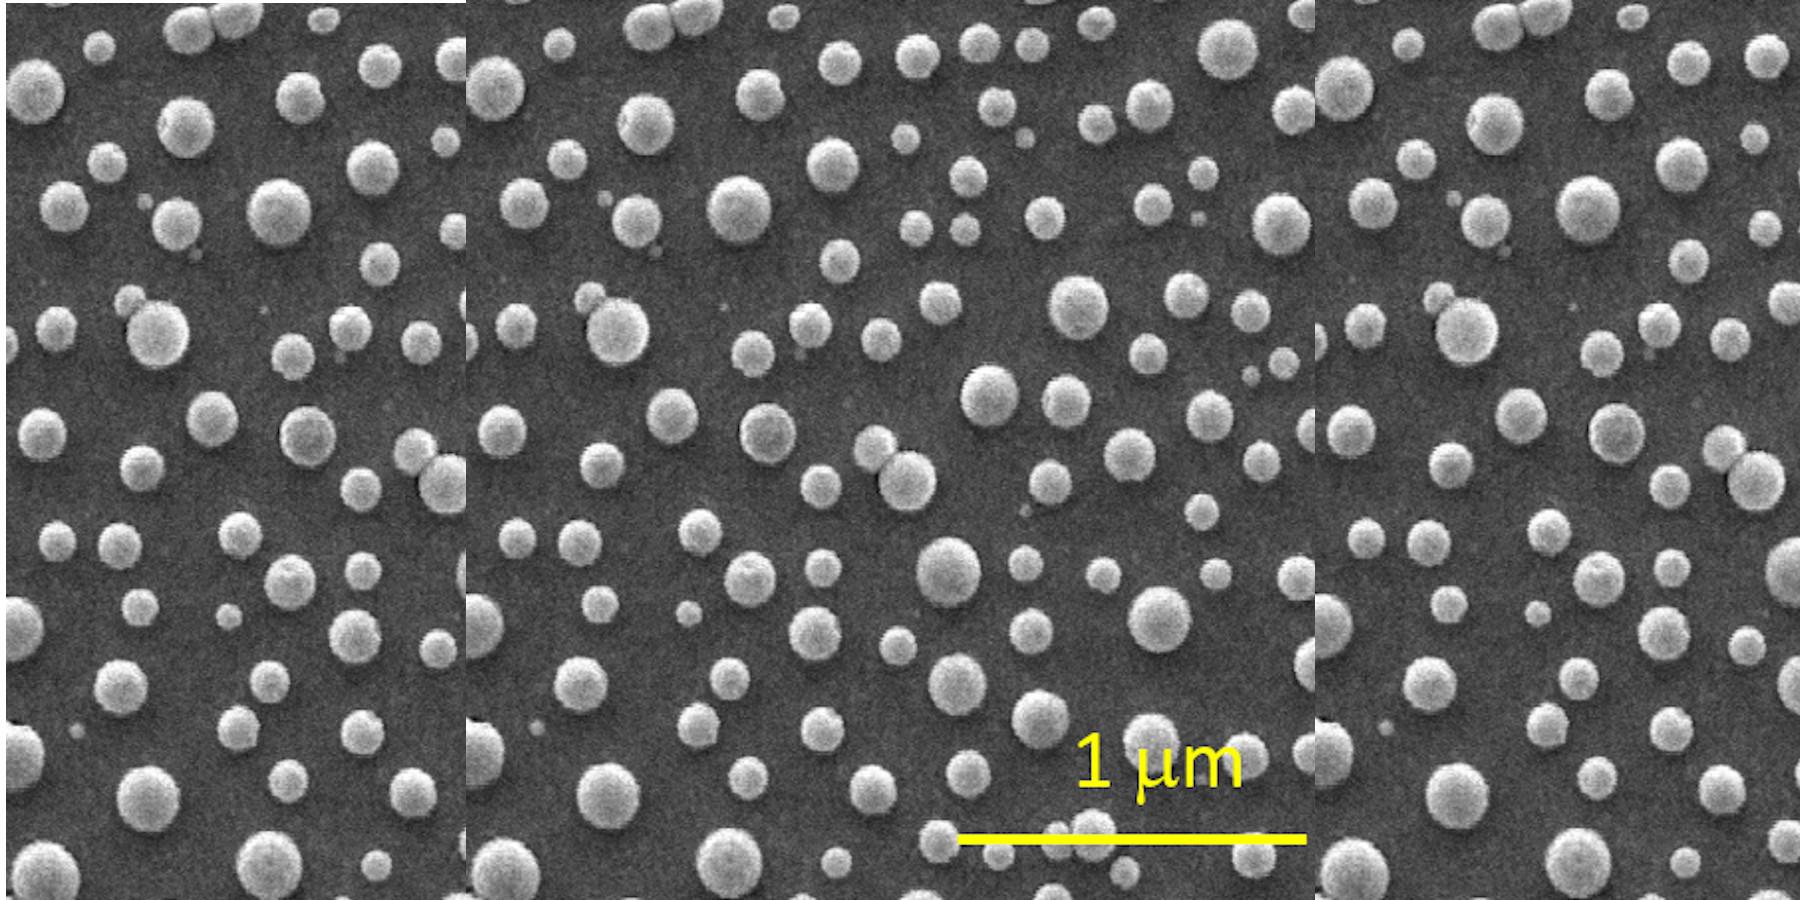 Imagen de microscopia electrónica de las nanocápsulas magnetoplasmónicas autoensambladas en una superficie de silicio